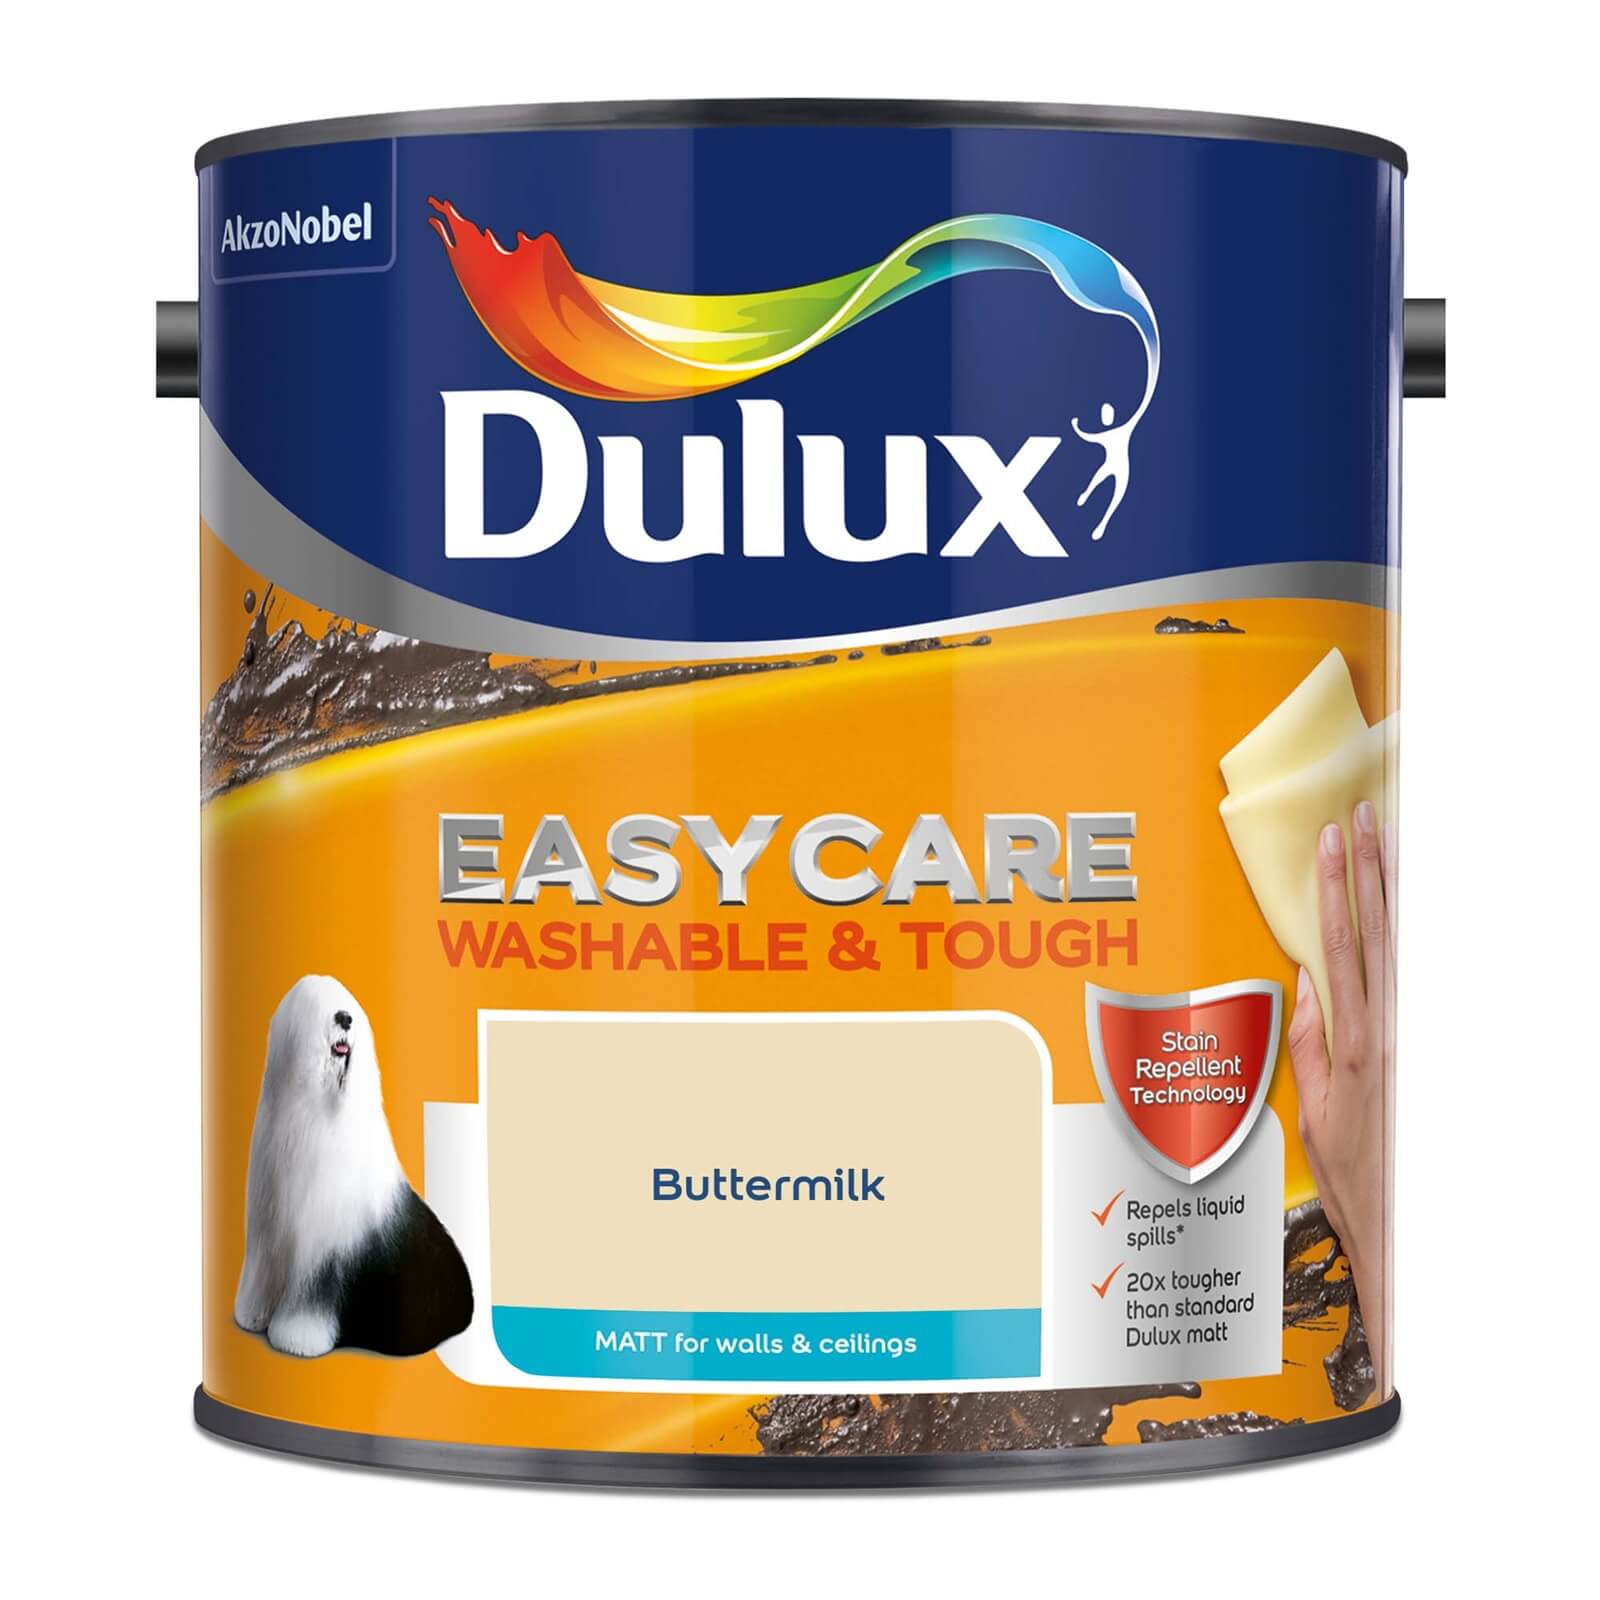 Dulux Easycare Washable & Tough Buttermilk Matt Paint - 2.5L